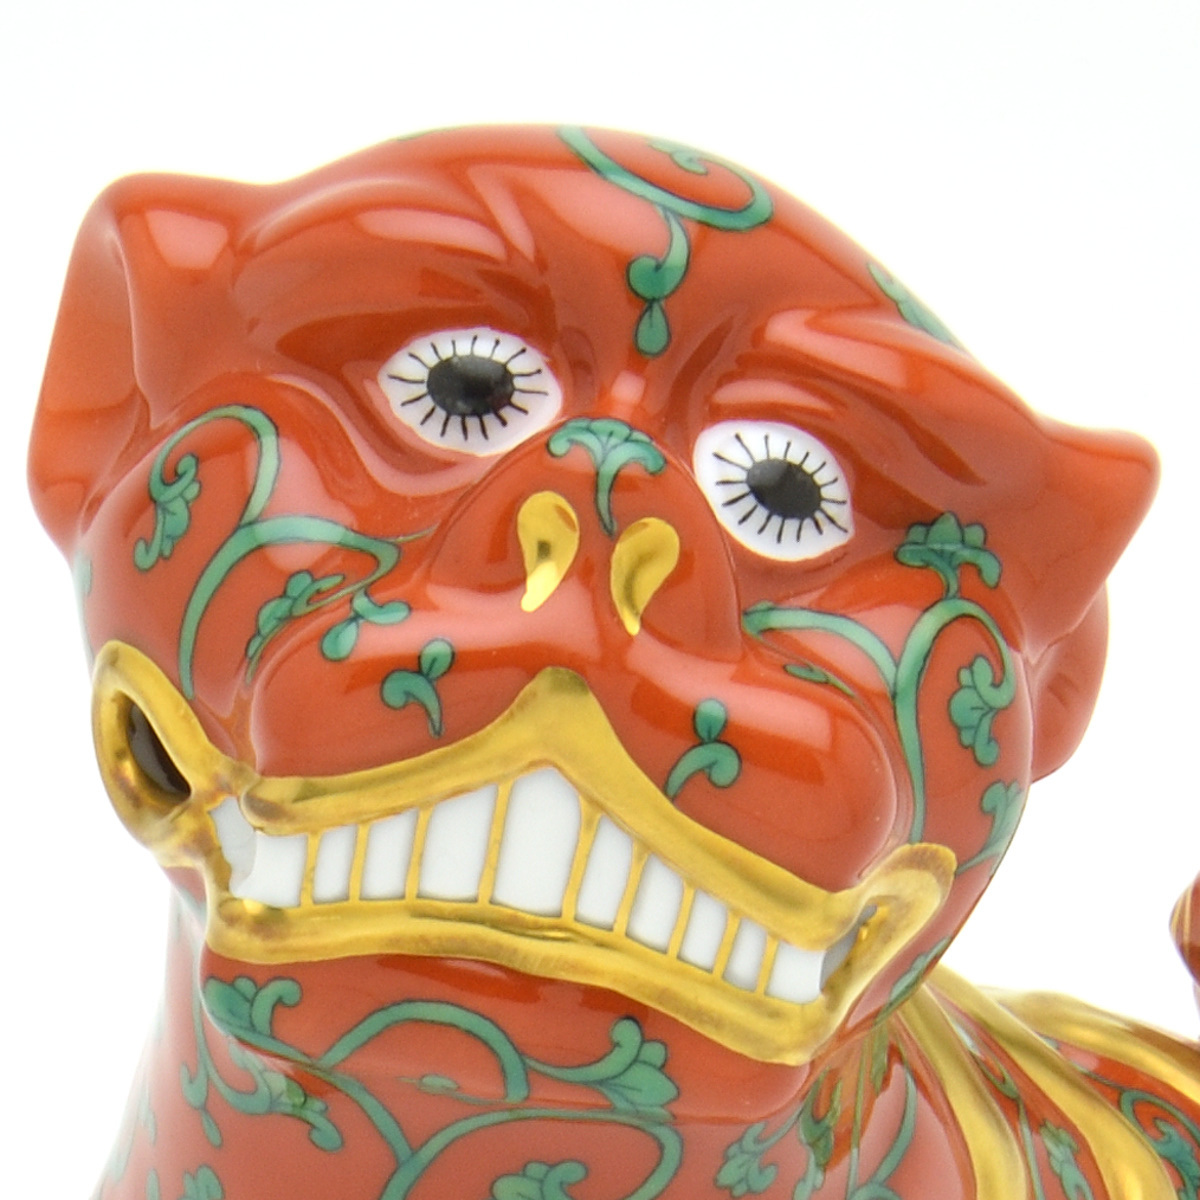 ヘレンド(Herend) 狛犬(ペア) 西安の赤 こまいぬ 手描き 磁器製 フィギュリン 置物 飾り物 ハンガリー製 新品_画像4